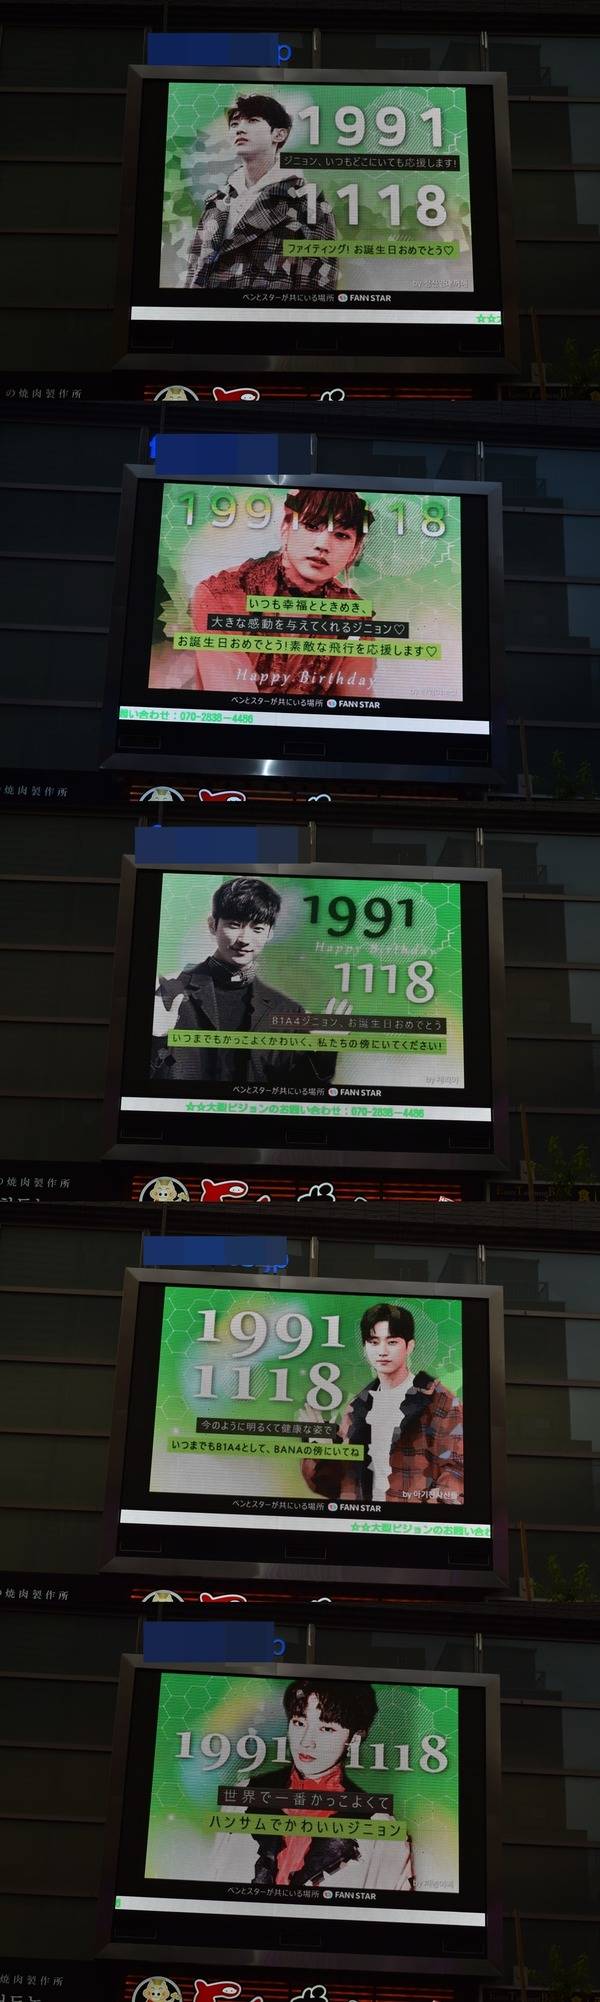 진영아, 생일 축하해 17일 그룹 B1A4 진영의 생일을 맞아 일본 도쿄에 위치한 전광판에서 축하 영상이 상영 중이다. /팬앤스타